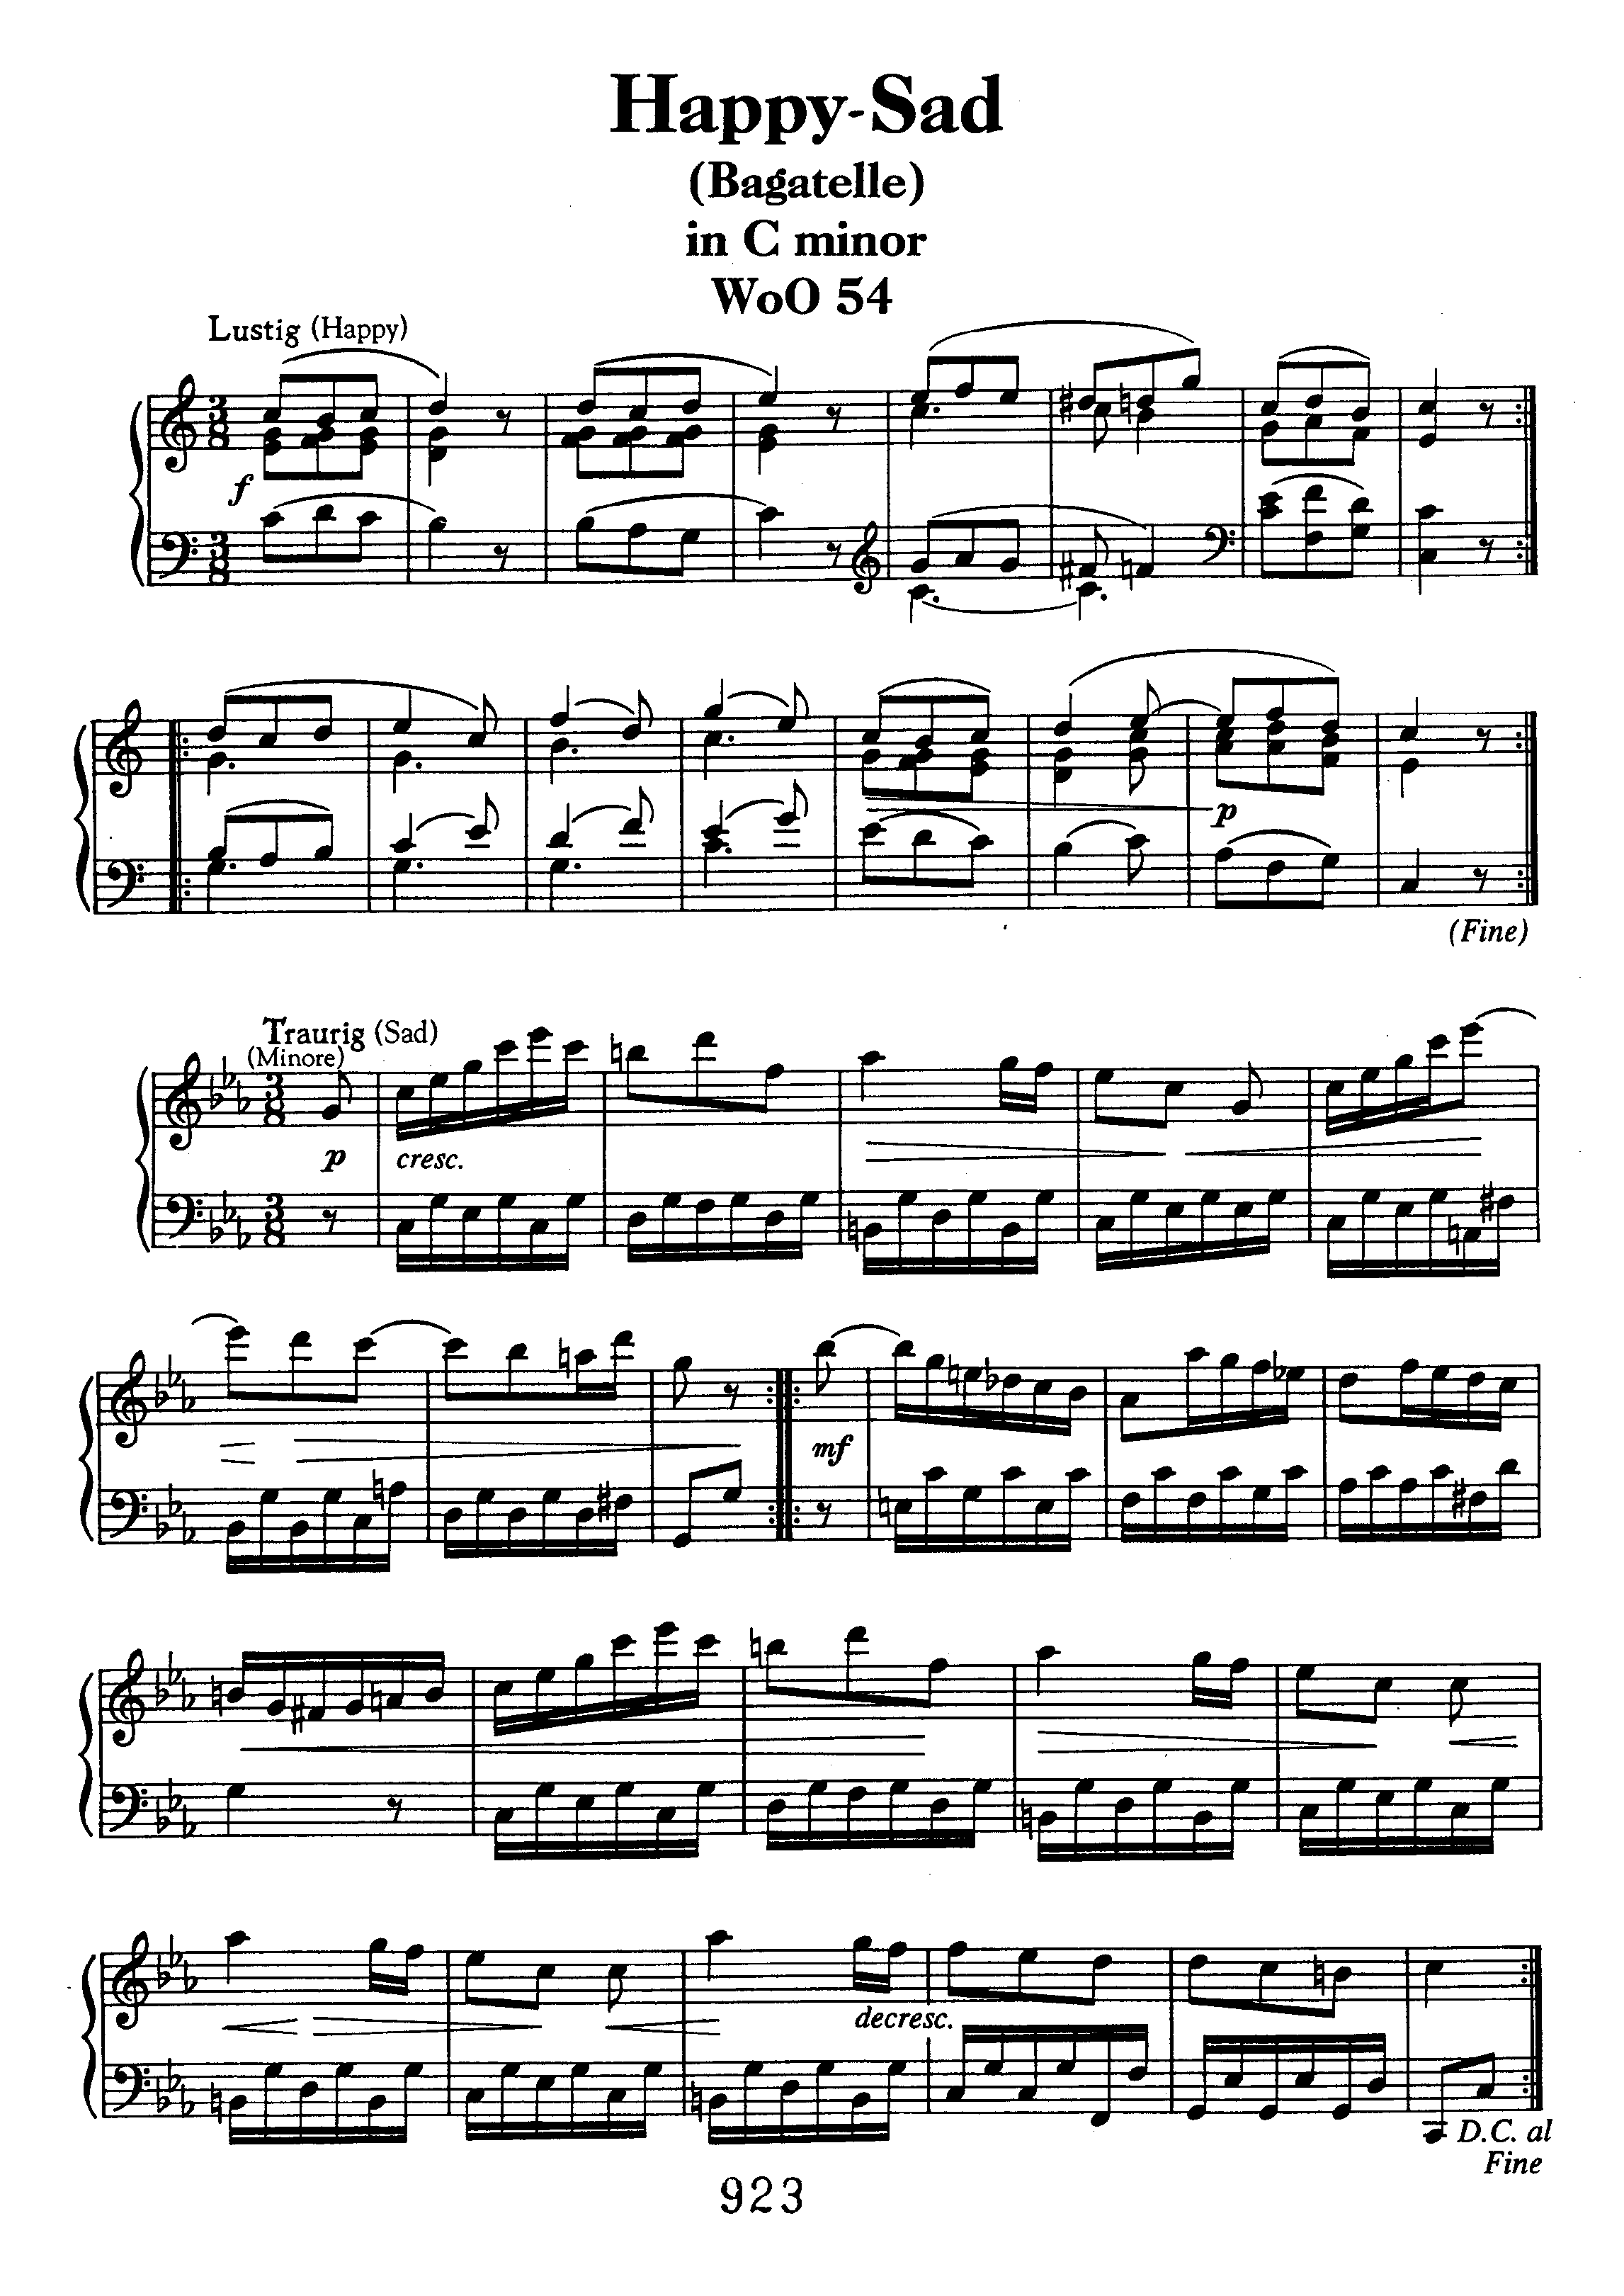 Bagatelle in C minor WoO 54 Score